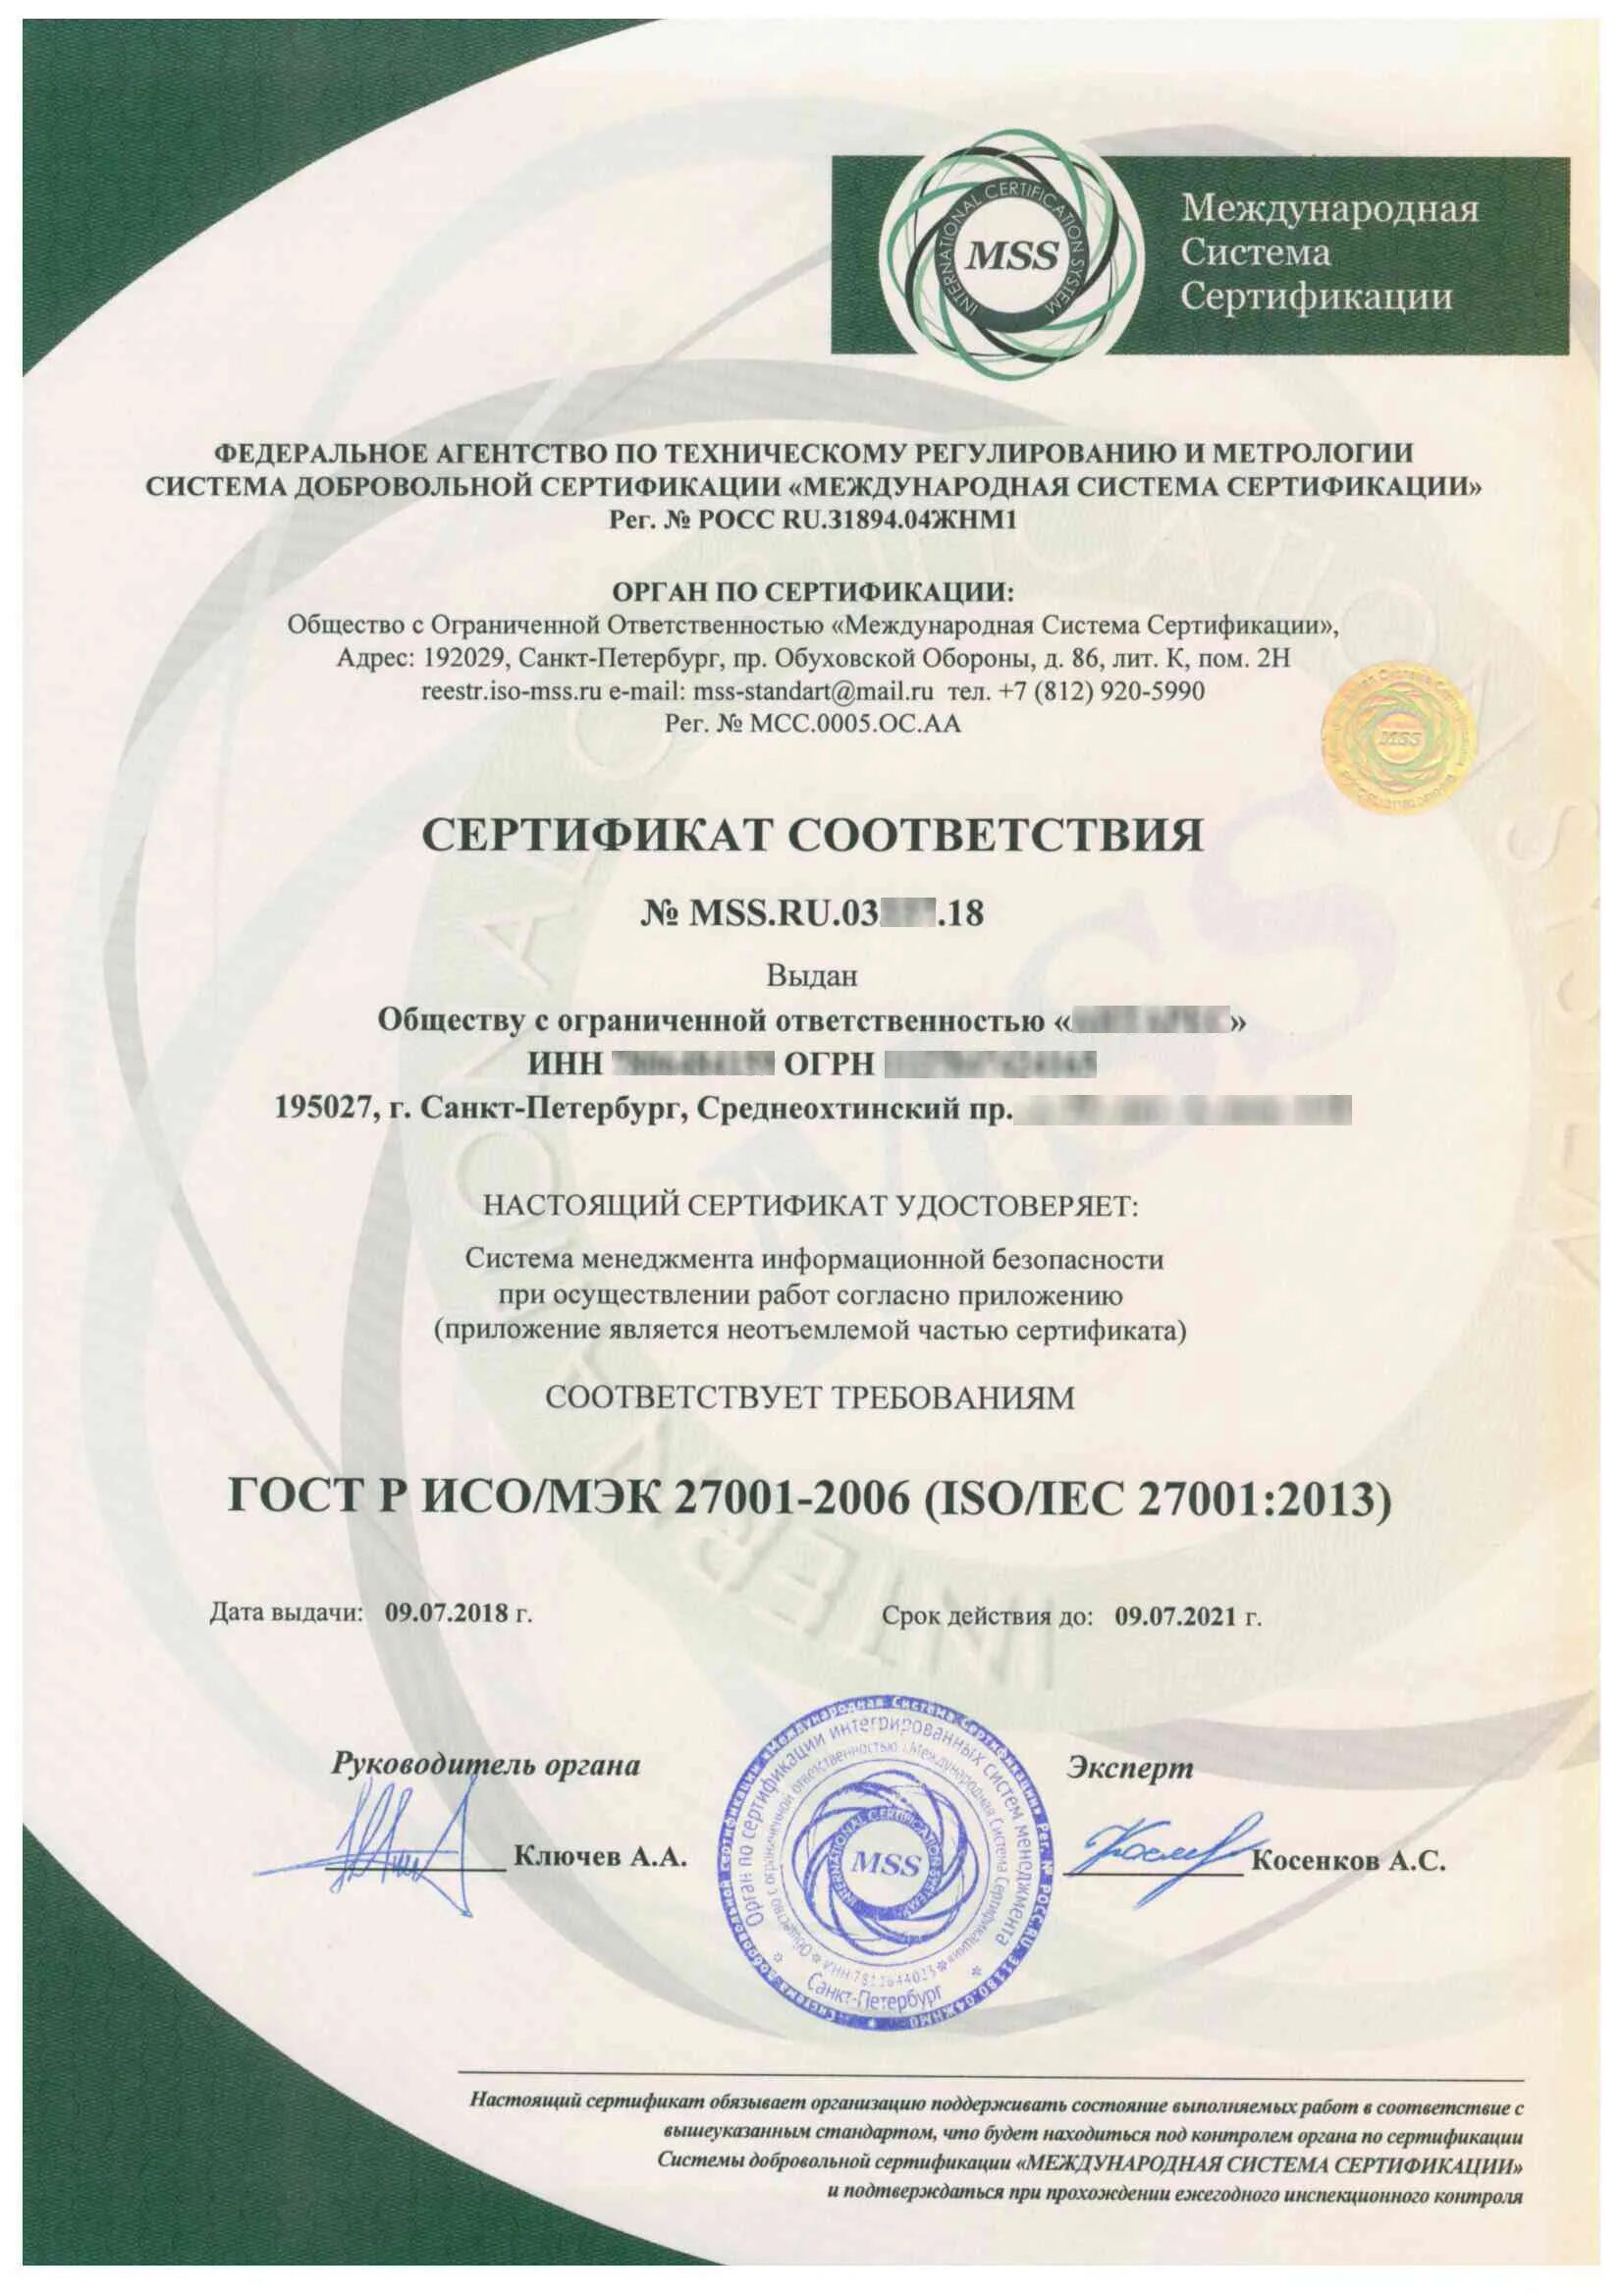 ГОСТ Р ИСО/МЭК 27001-2006. Международная система сертификации. Сертификаты безопасности информационной системы. Системы сертификации в России. Документы международных соответствий